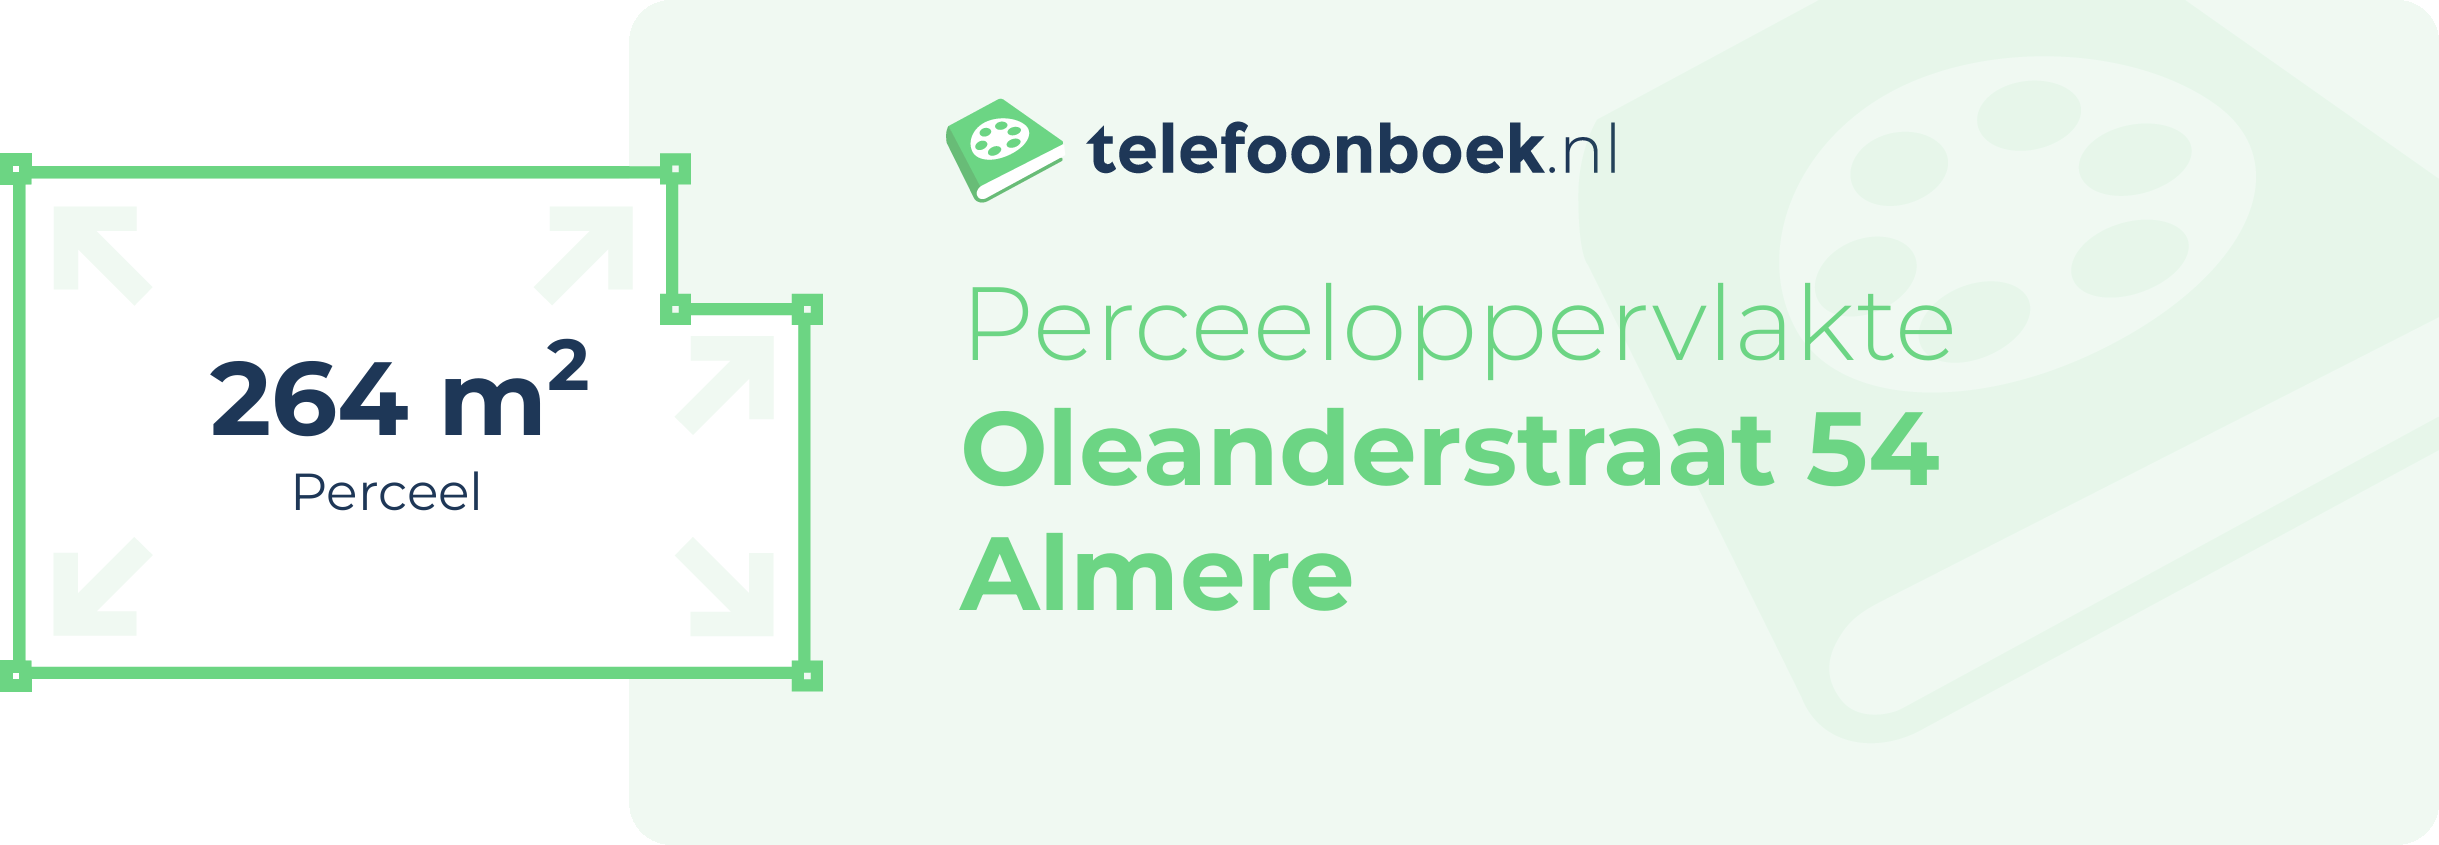 Perceeloppervlakte Oleanderstraat 54 Almere